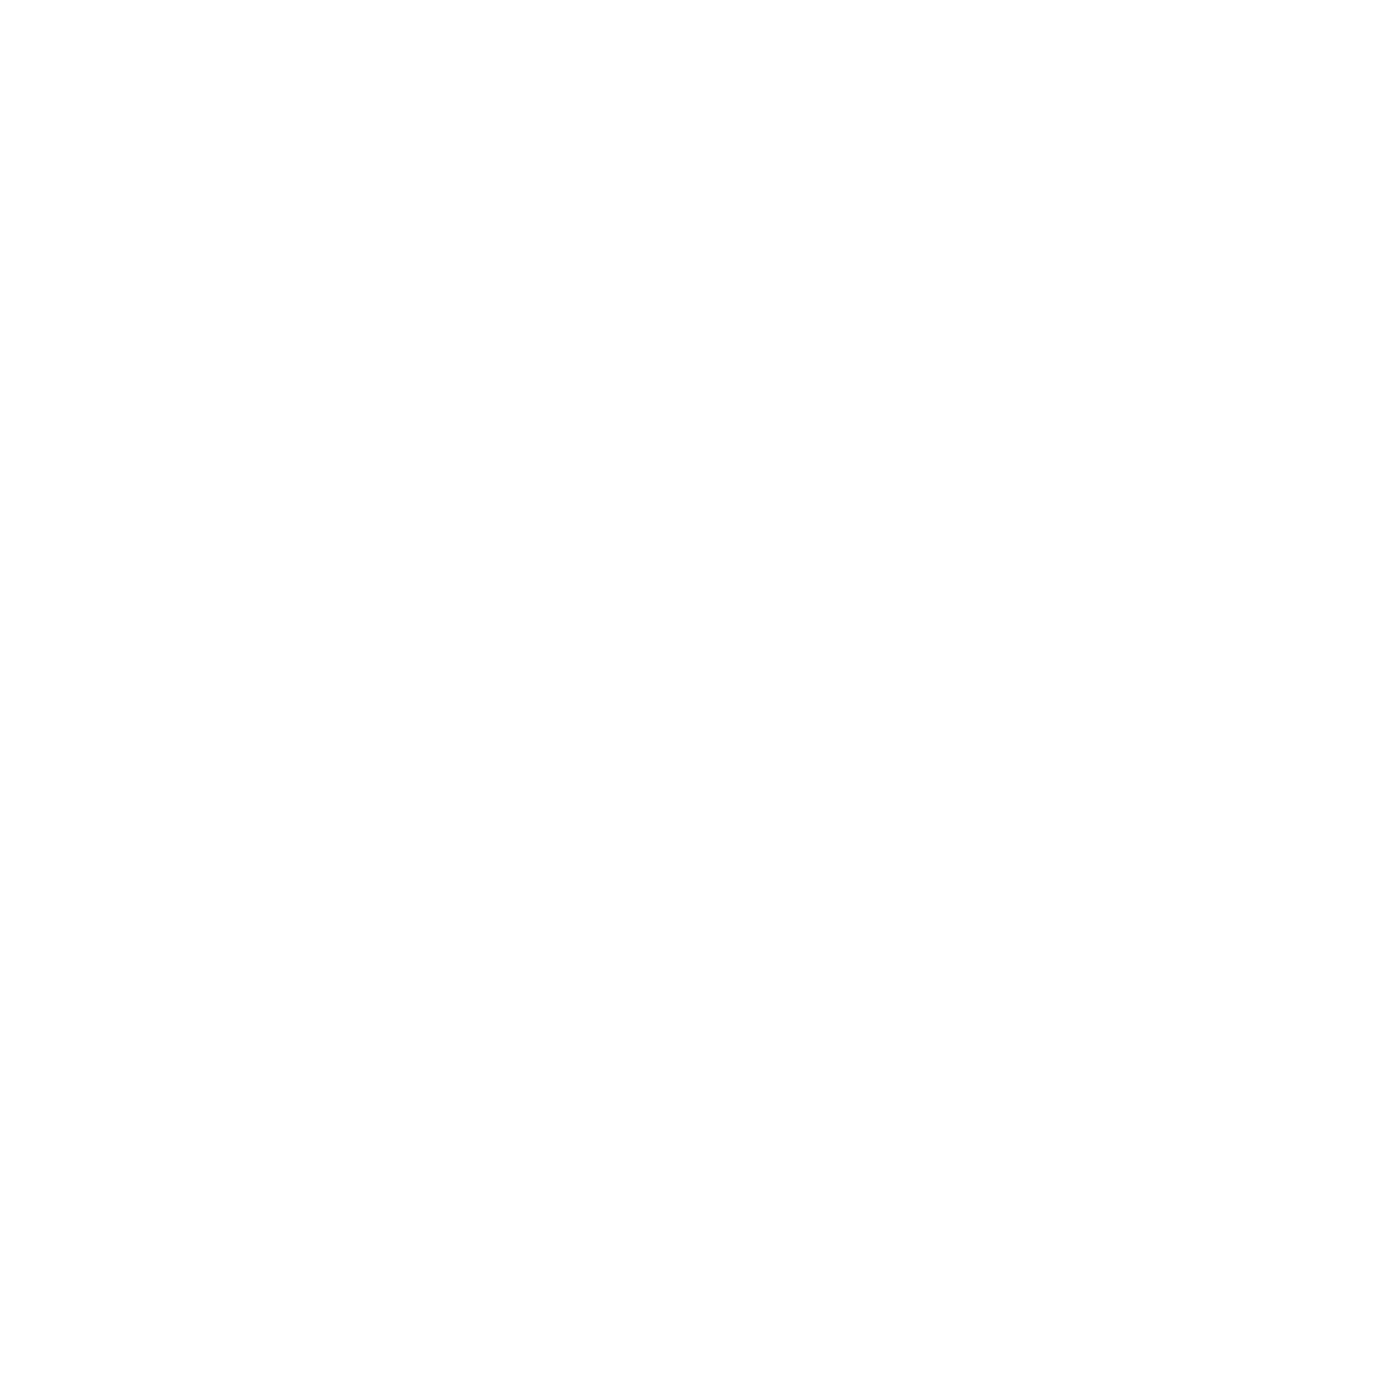 ufa168 - HacksawGaming